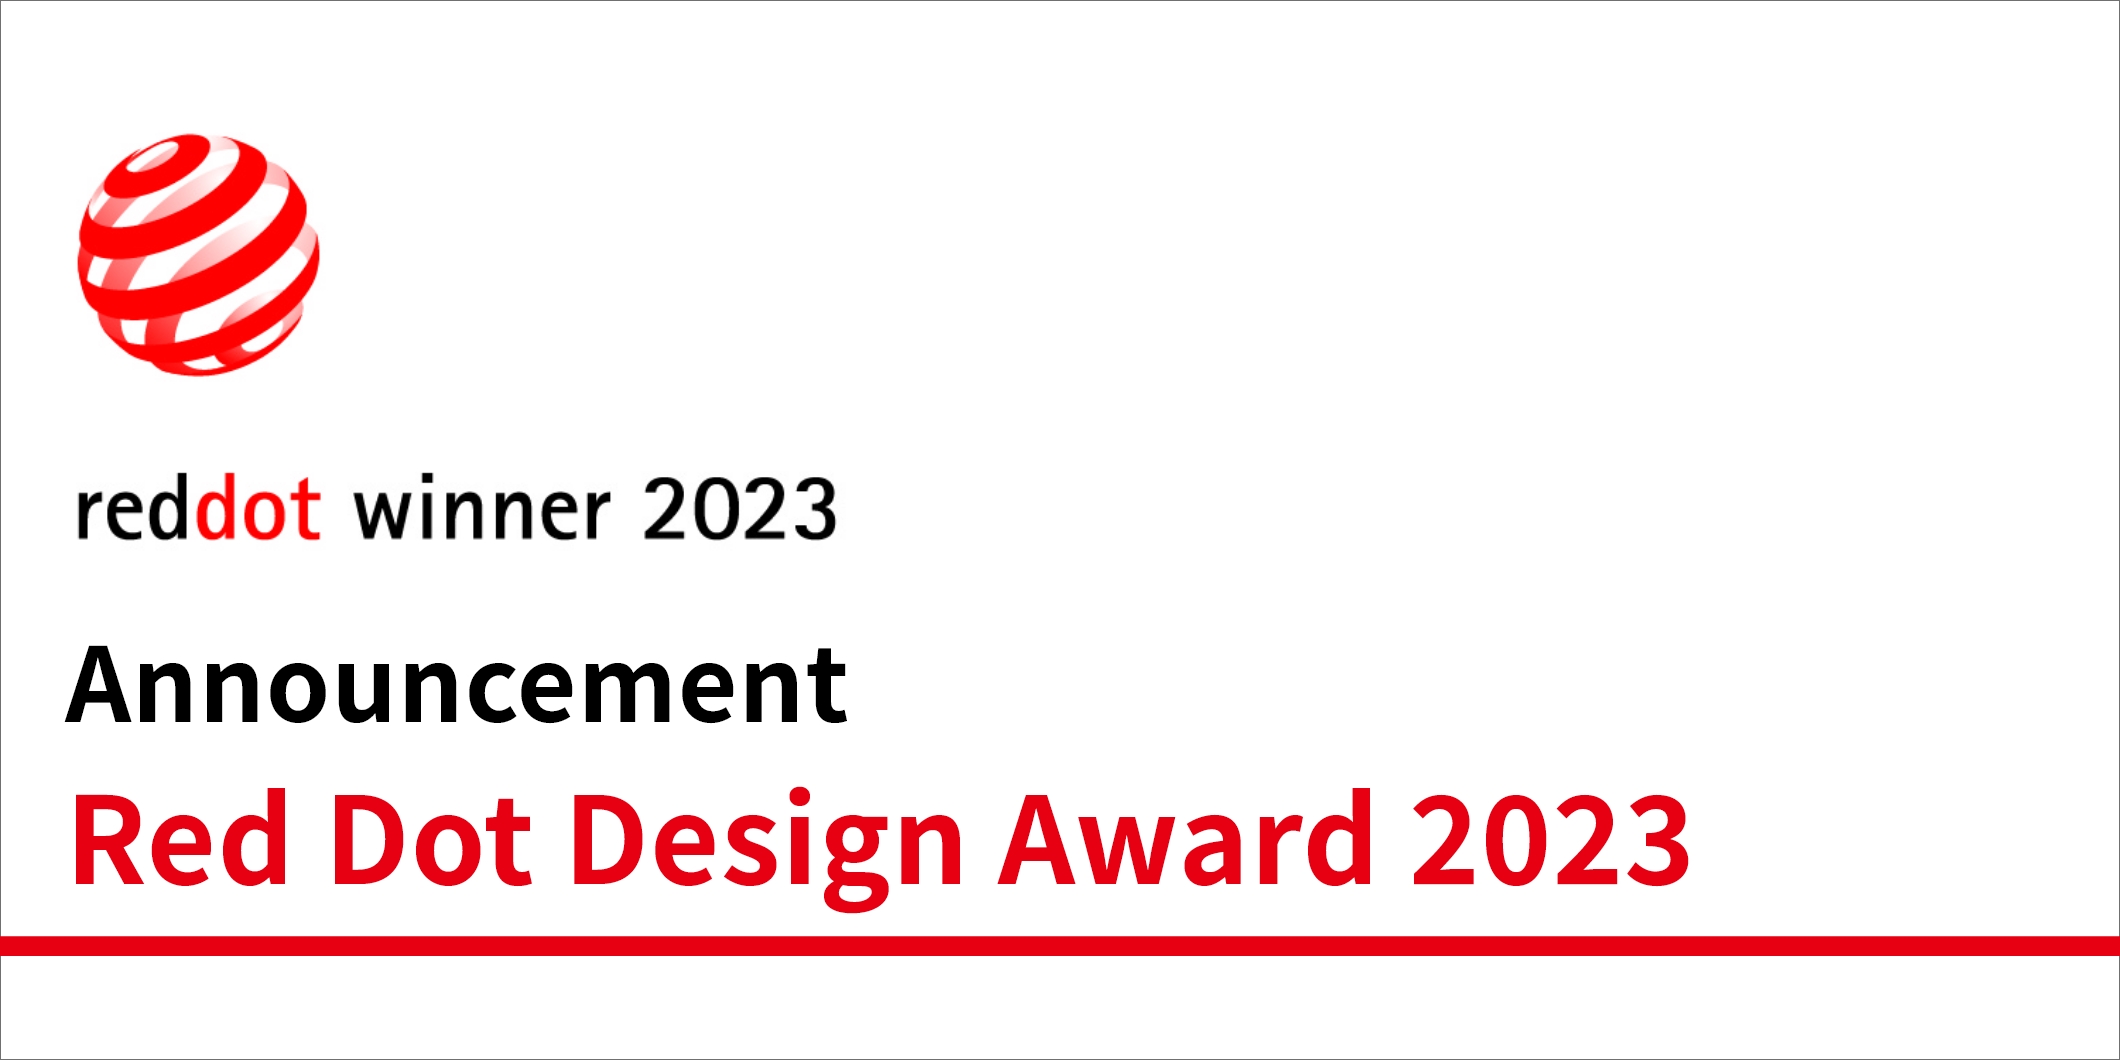 We won Red Dot Design Award 2023